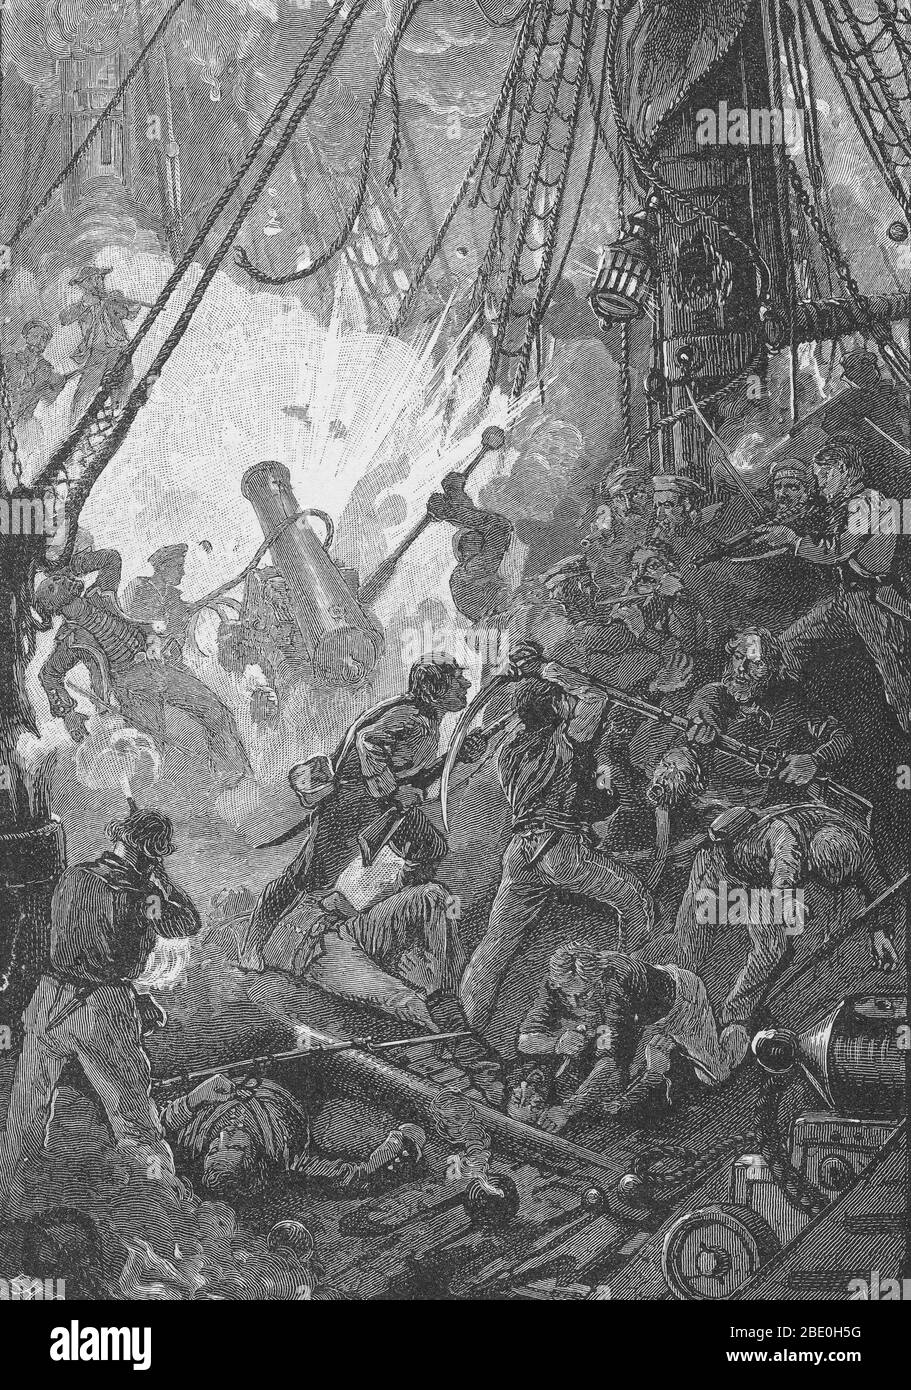 Les équipages de l'USS Bonhomme Richard et du HMS Serapis le combattent. La bataille de Flamborough Head était une bataille navale qui a eu lieu le 23 septembre 1779, en mer du Nord au large de la côte du Yorkshire, opposant le bonhomme Richard de Jones au navire britannique Serapis. En utilisant sa plus grande maniabilité et ses armes plus lourdes, le Serapis a ratissé et saisi le Bonhomme Richard. Jones a contré en rasant les Serapis et en ayant son équipage lier les navires avec des crochets de grimpage. Les navires ont continué à tirer l'un vers l'autre, les marines des deux côtés s'étant arrachées à l'équipage et aux officiers opposés. Une tentative américaine Banque D'Images